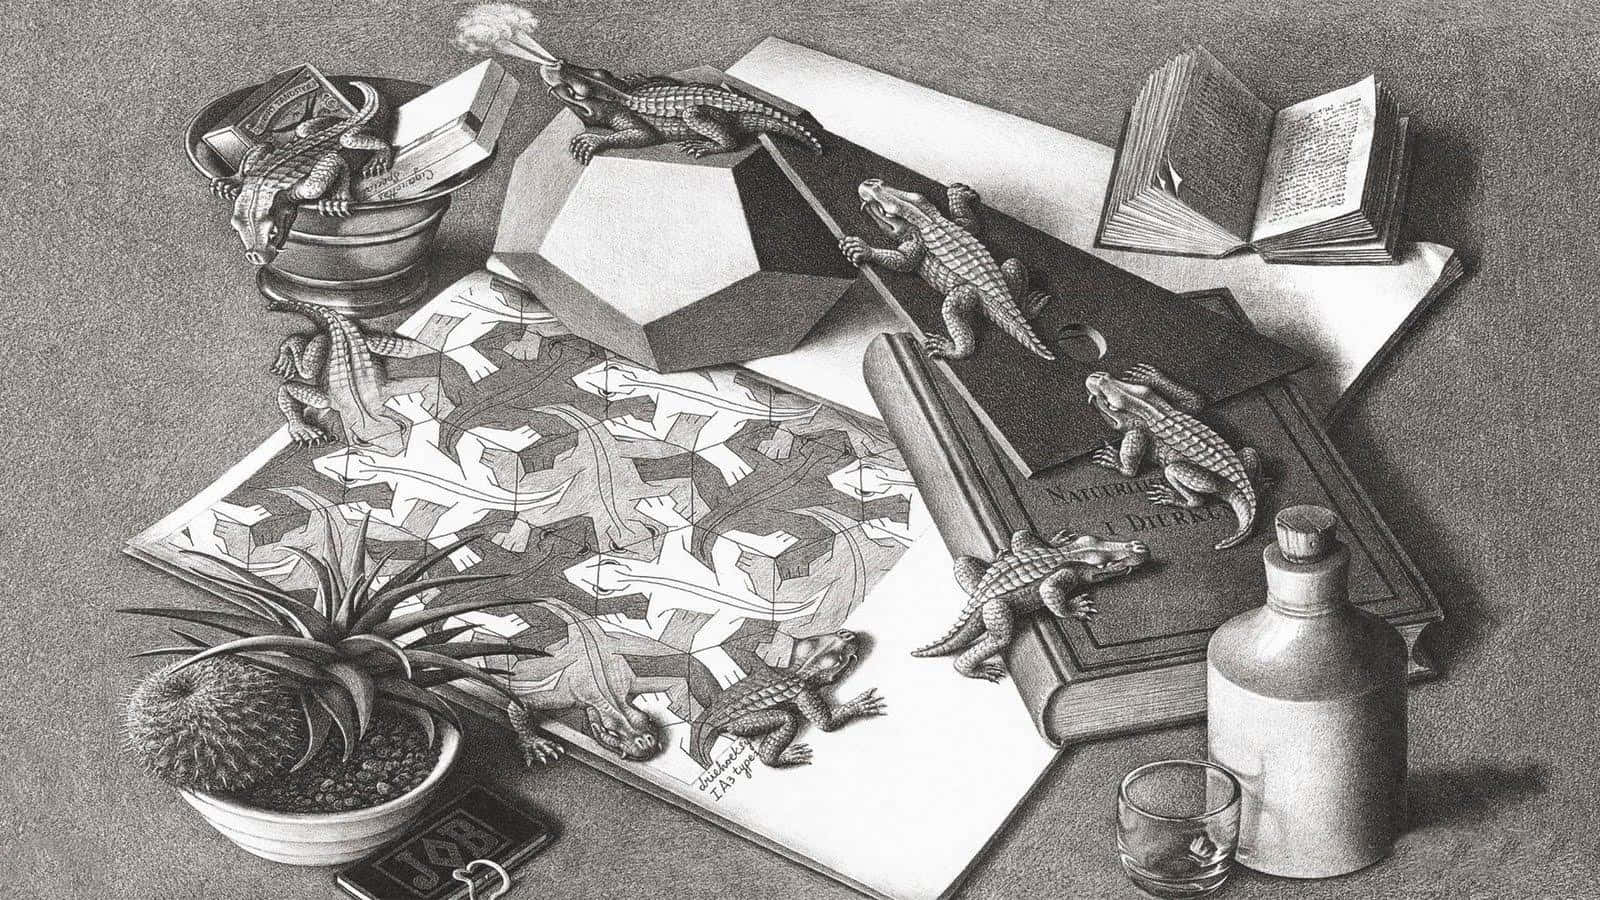 Escher 1600 X 900 Wallpaper